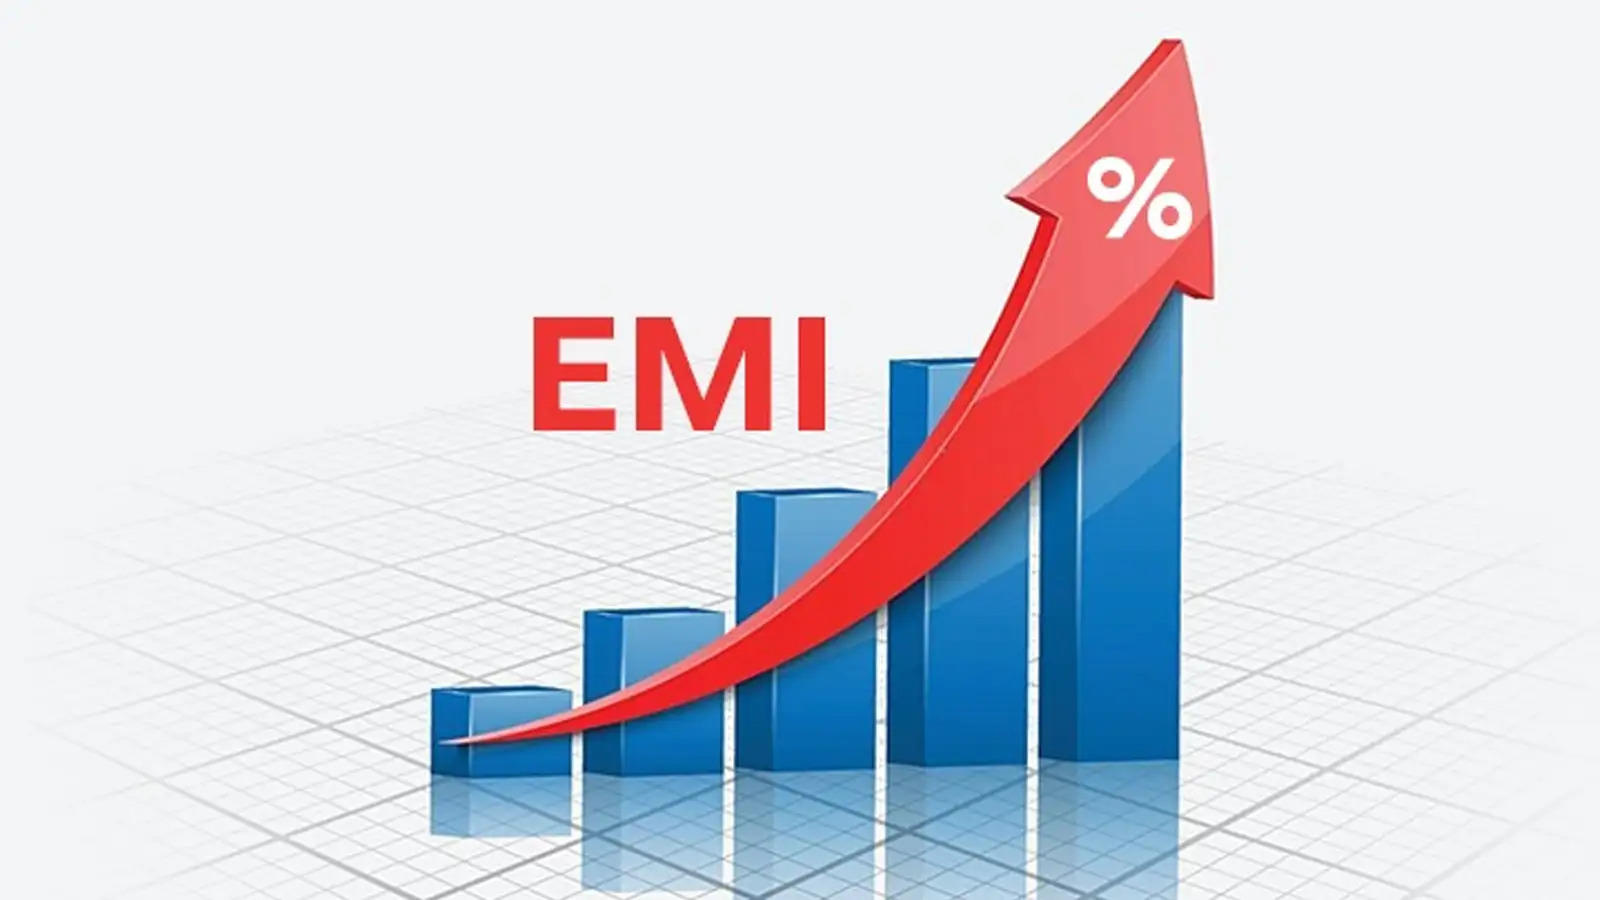 4 बड़े बैंकों ने की लोन की ब्याज दरों में बढ़ोत्तरी की घोषणा, अब देनी होगी ज्यादा EMI